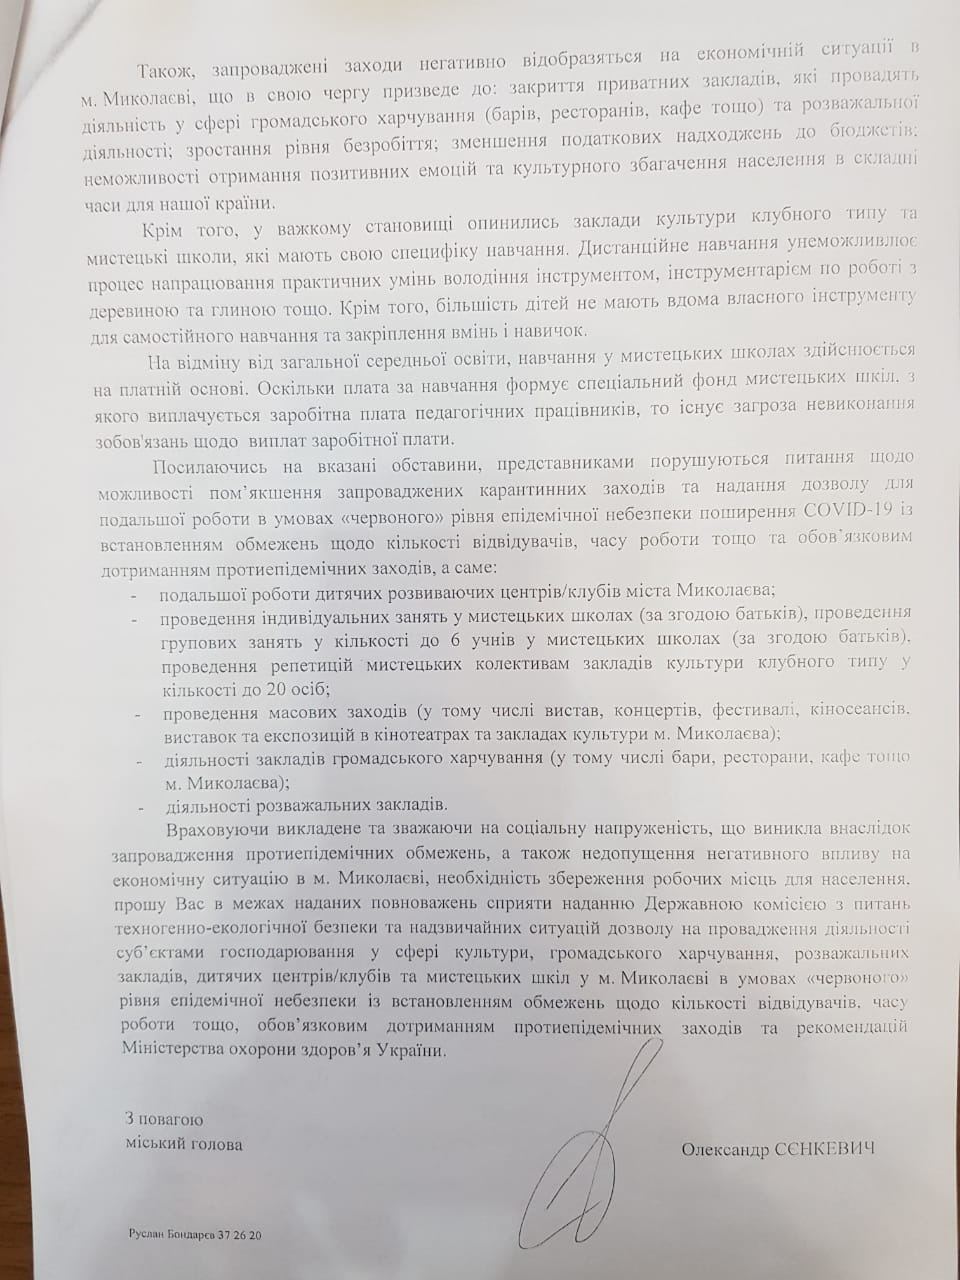 мэр Николаева просит ослабить карантинные ограничения в городе